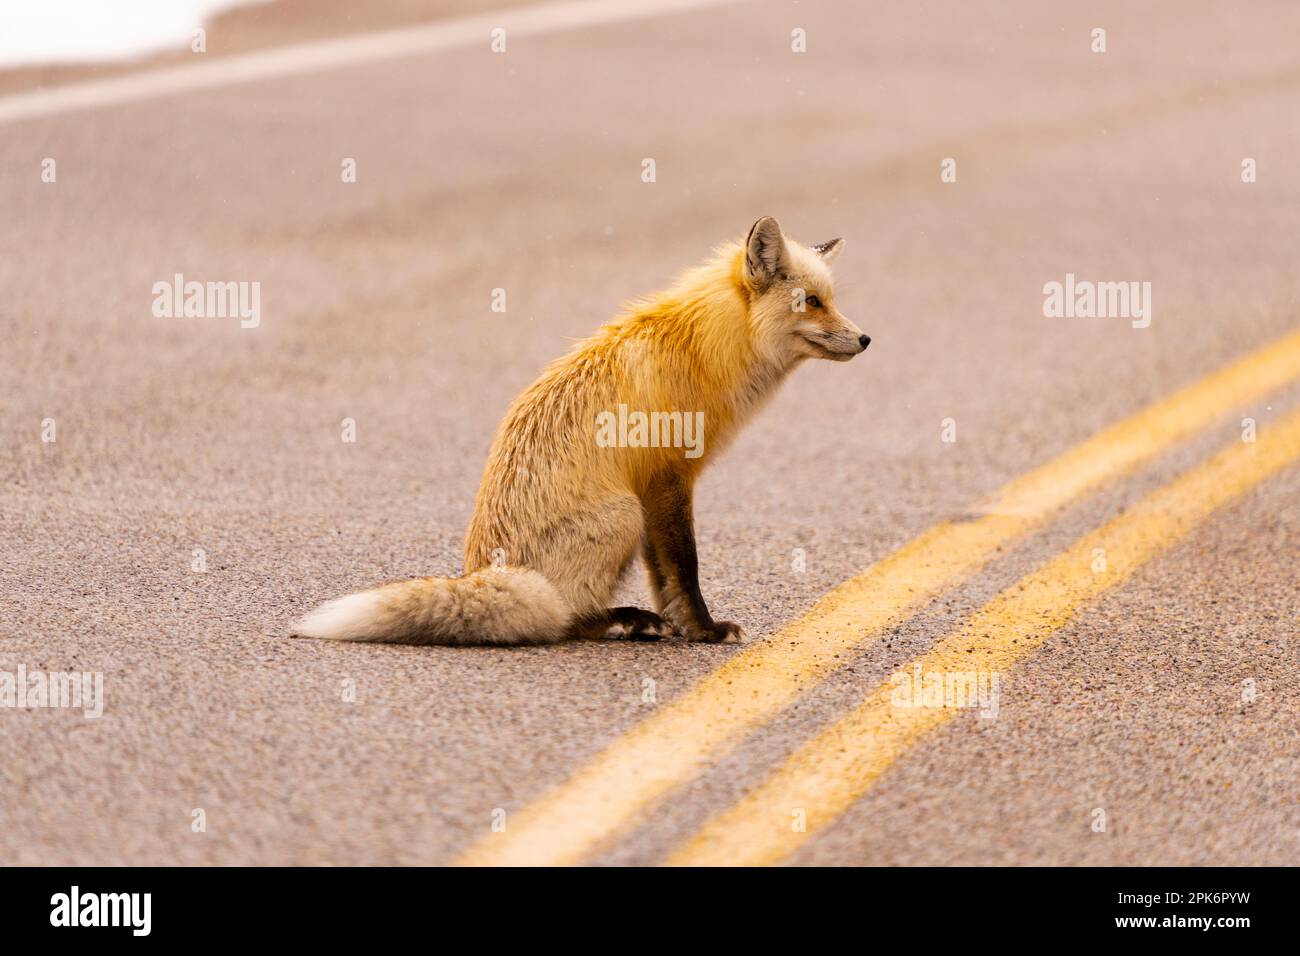 Retrato de zorro en la carretera Foto de stock